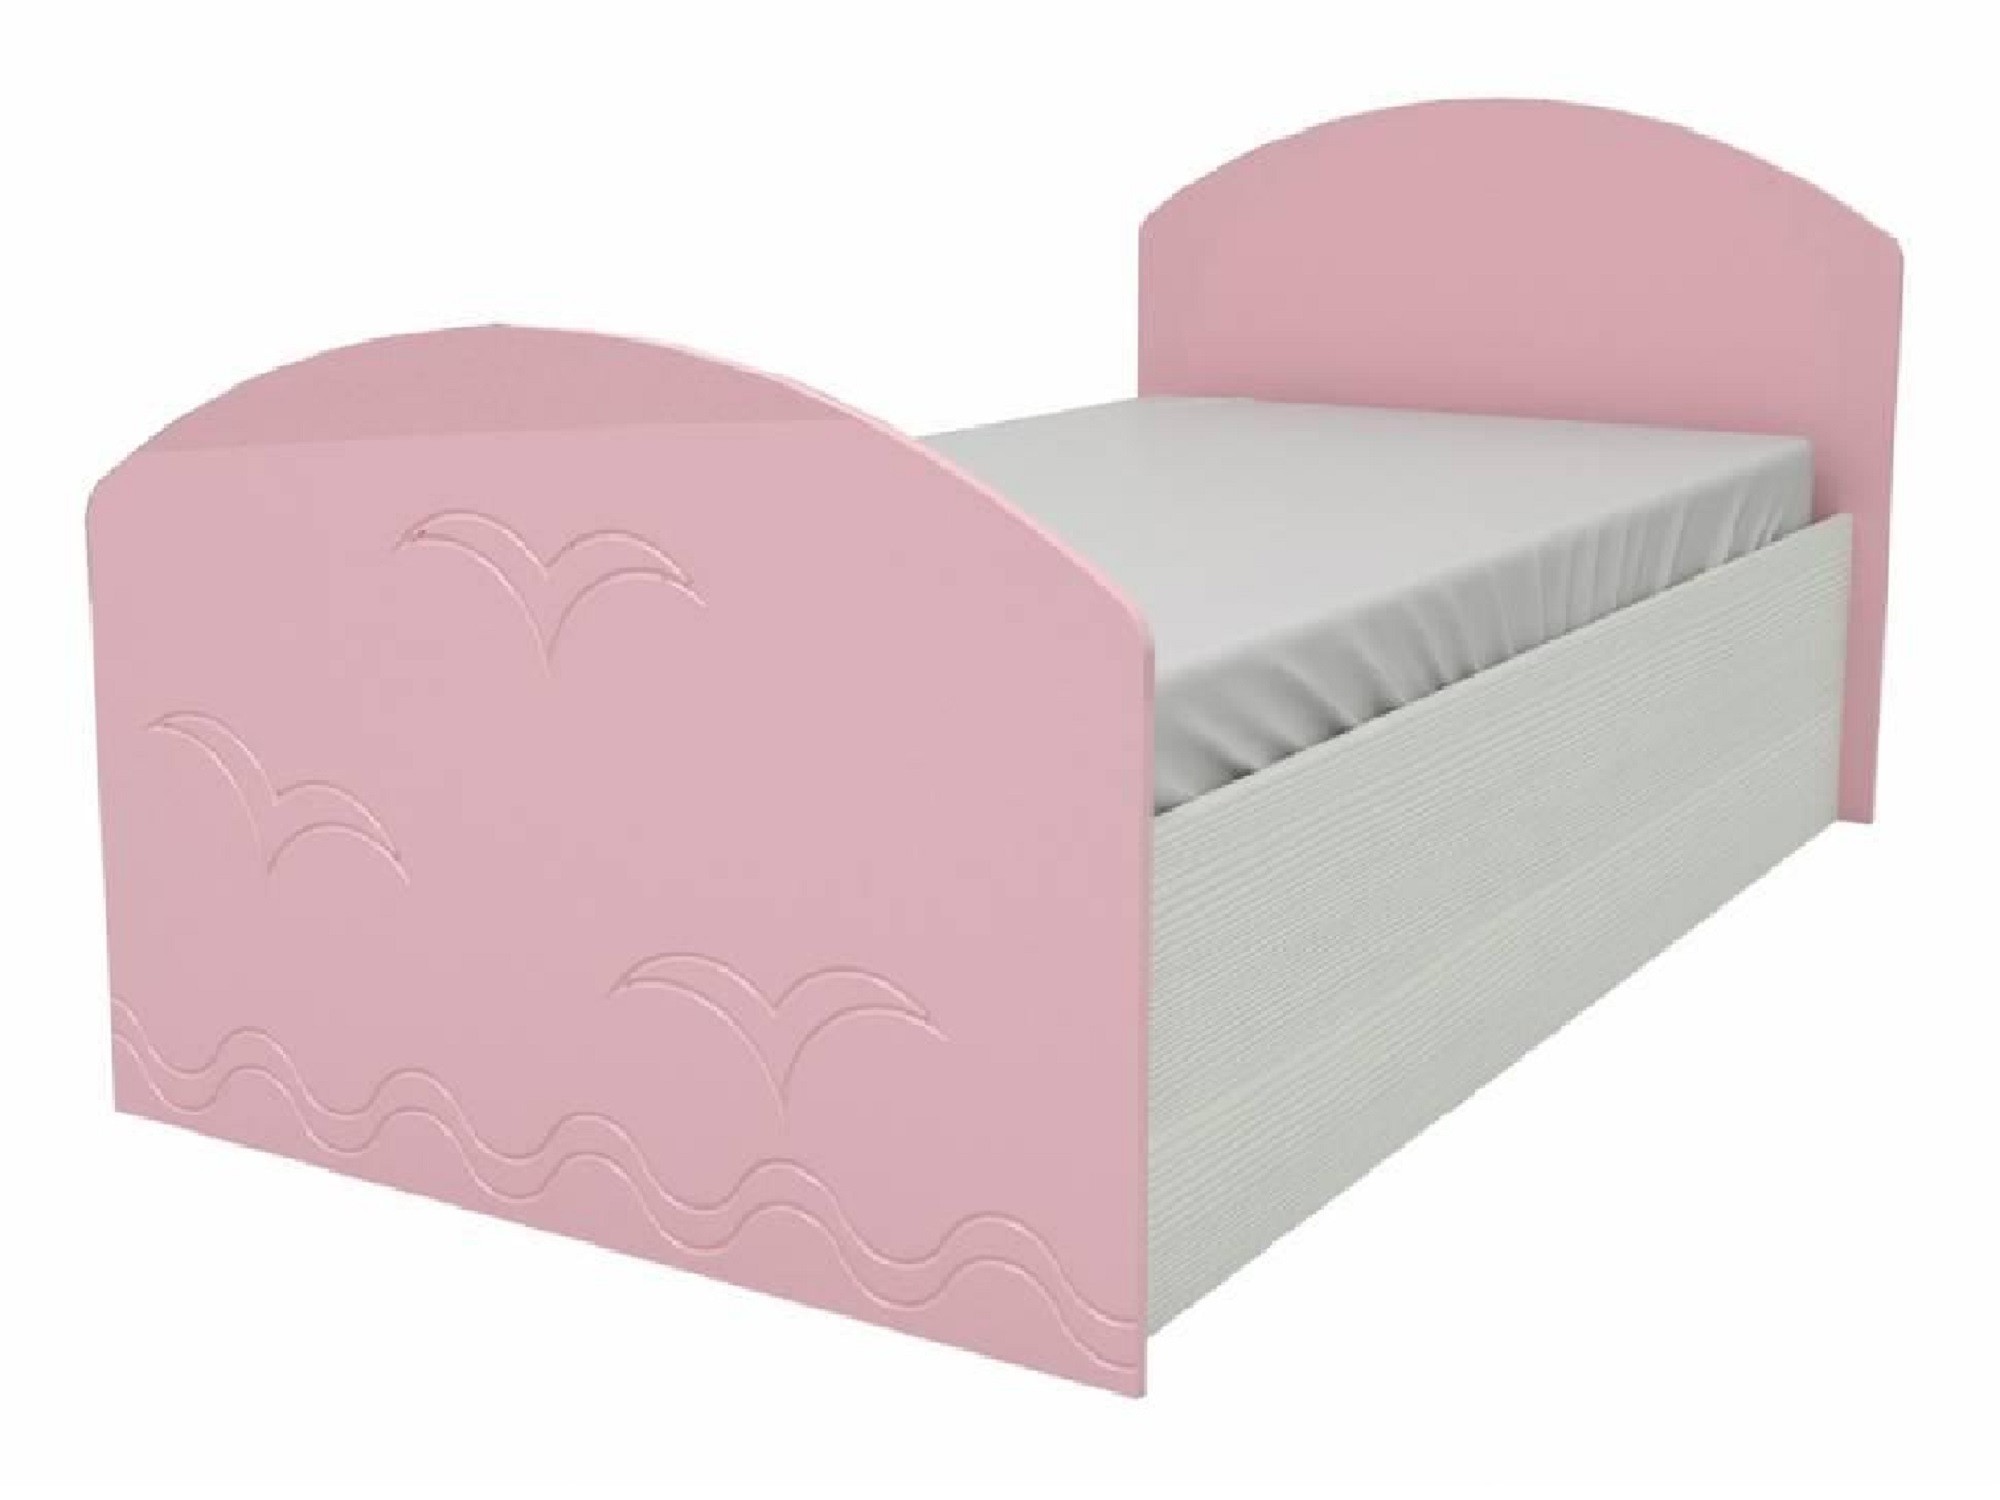 Юниор-2 Детская кровать 80, металлик (Розовый металлик, Дуб белёный) Дуб белёный, МДФ, ЛДСП юниор 2 стенка металлик розовый металлик дуб белёный розовый металлик мдф лдсп